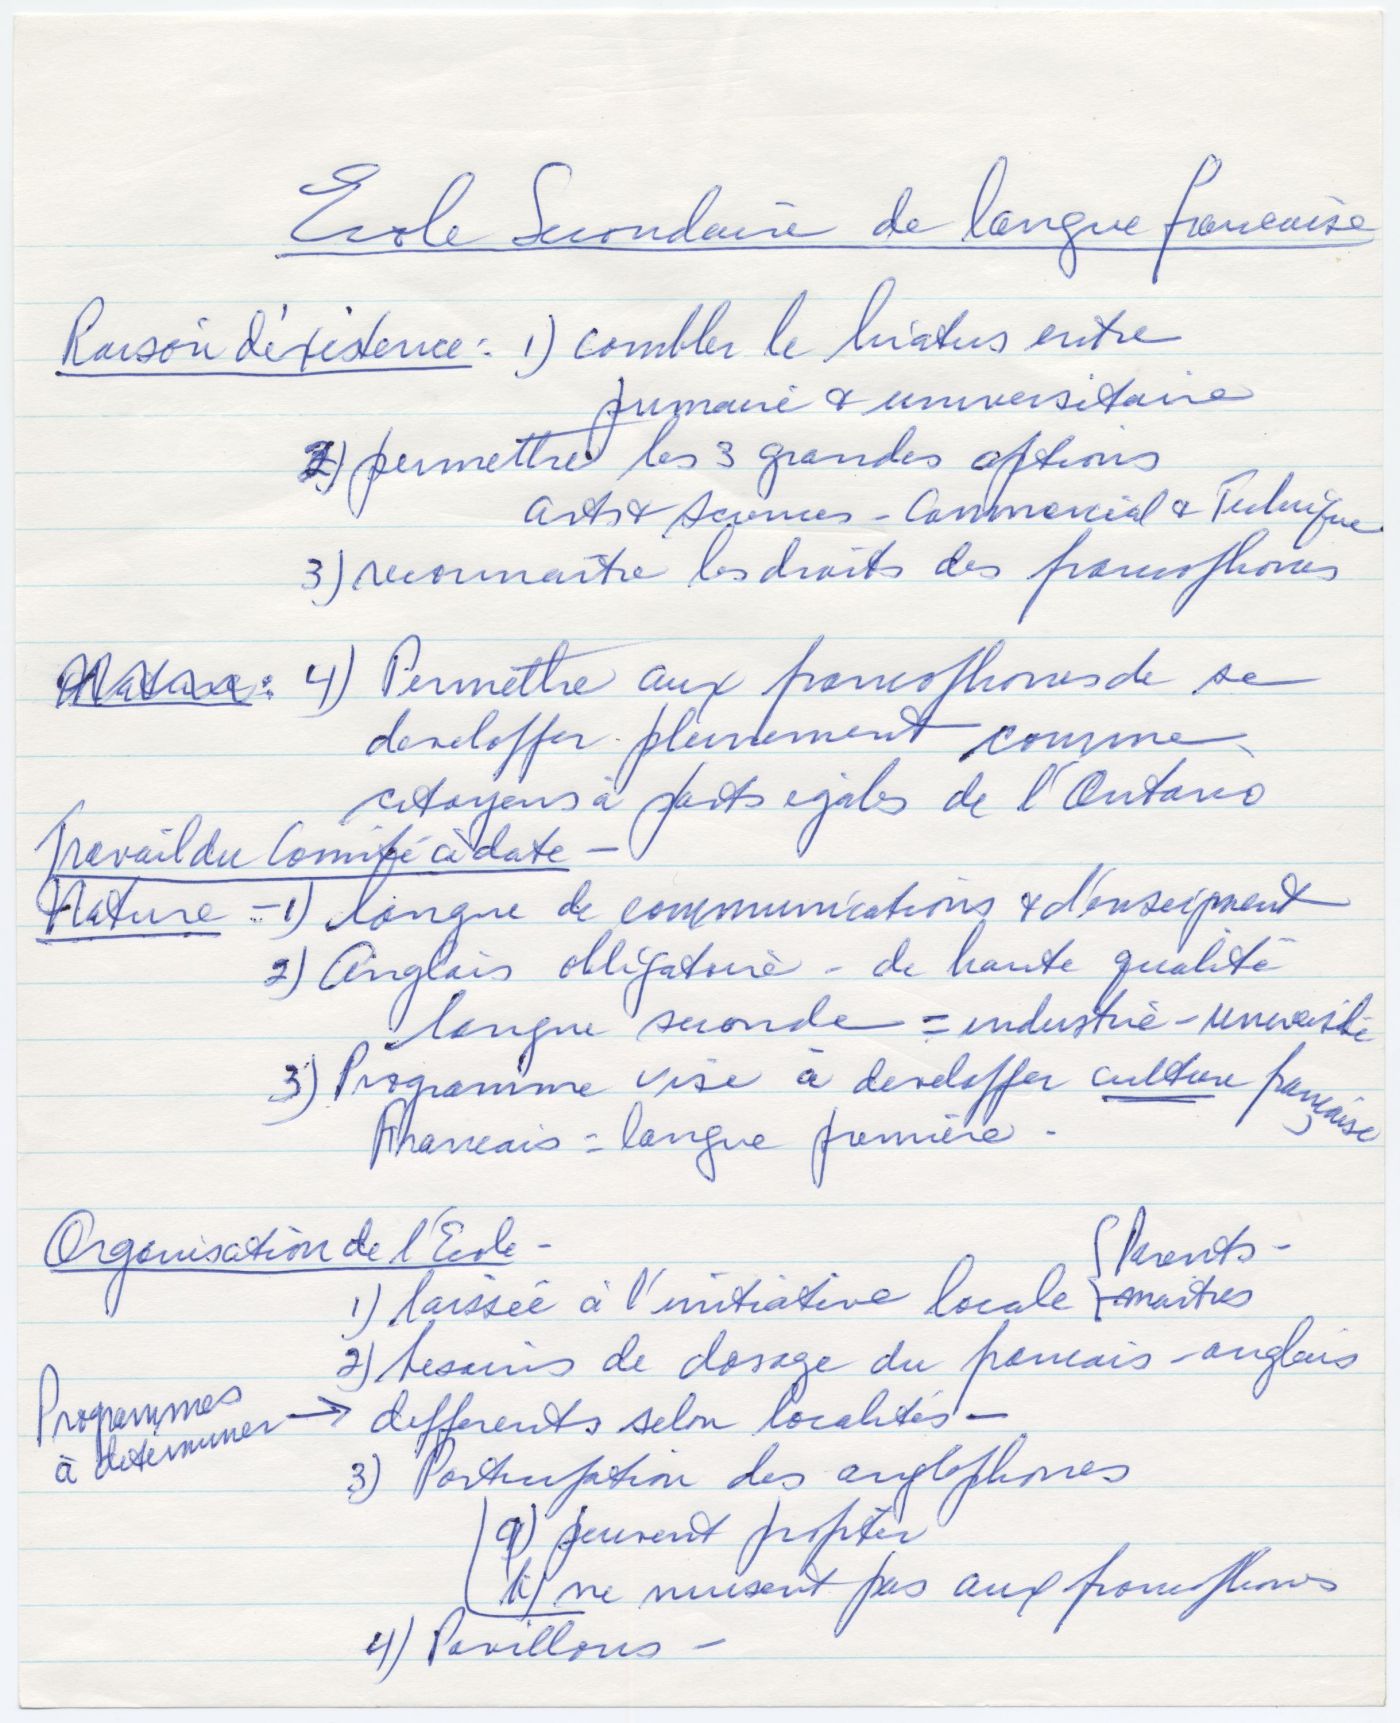 Texte manuscrit à l'encre bleue, en français. Une liste numérotée de recommandations, sous trois rubriques: raison d'existence, nature et organisation de l'école. Ratures et ajouts.